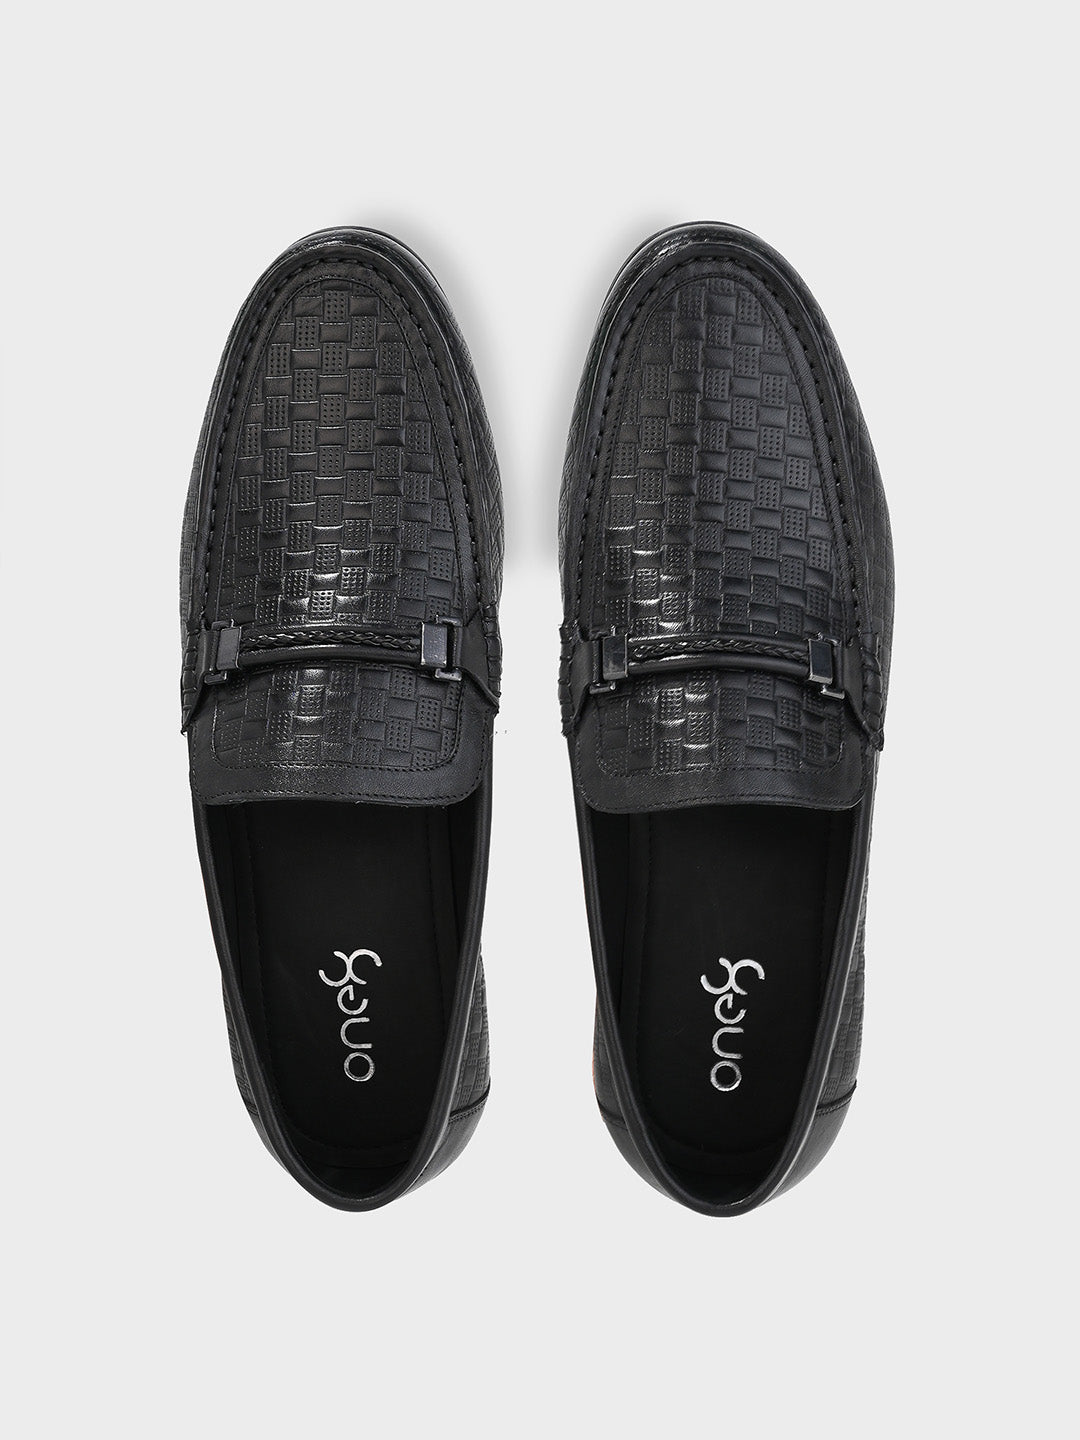 Men's Black Leather Slip-On Loafers